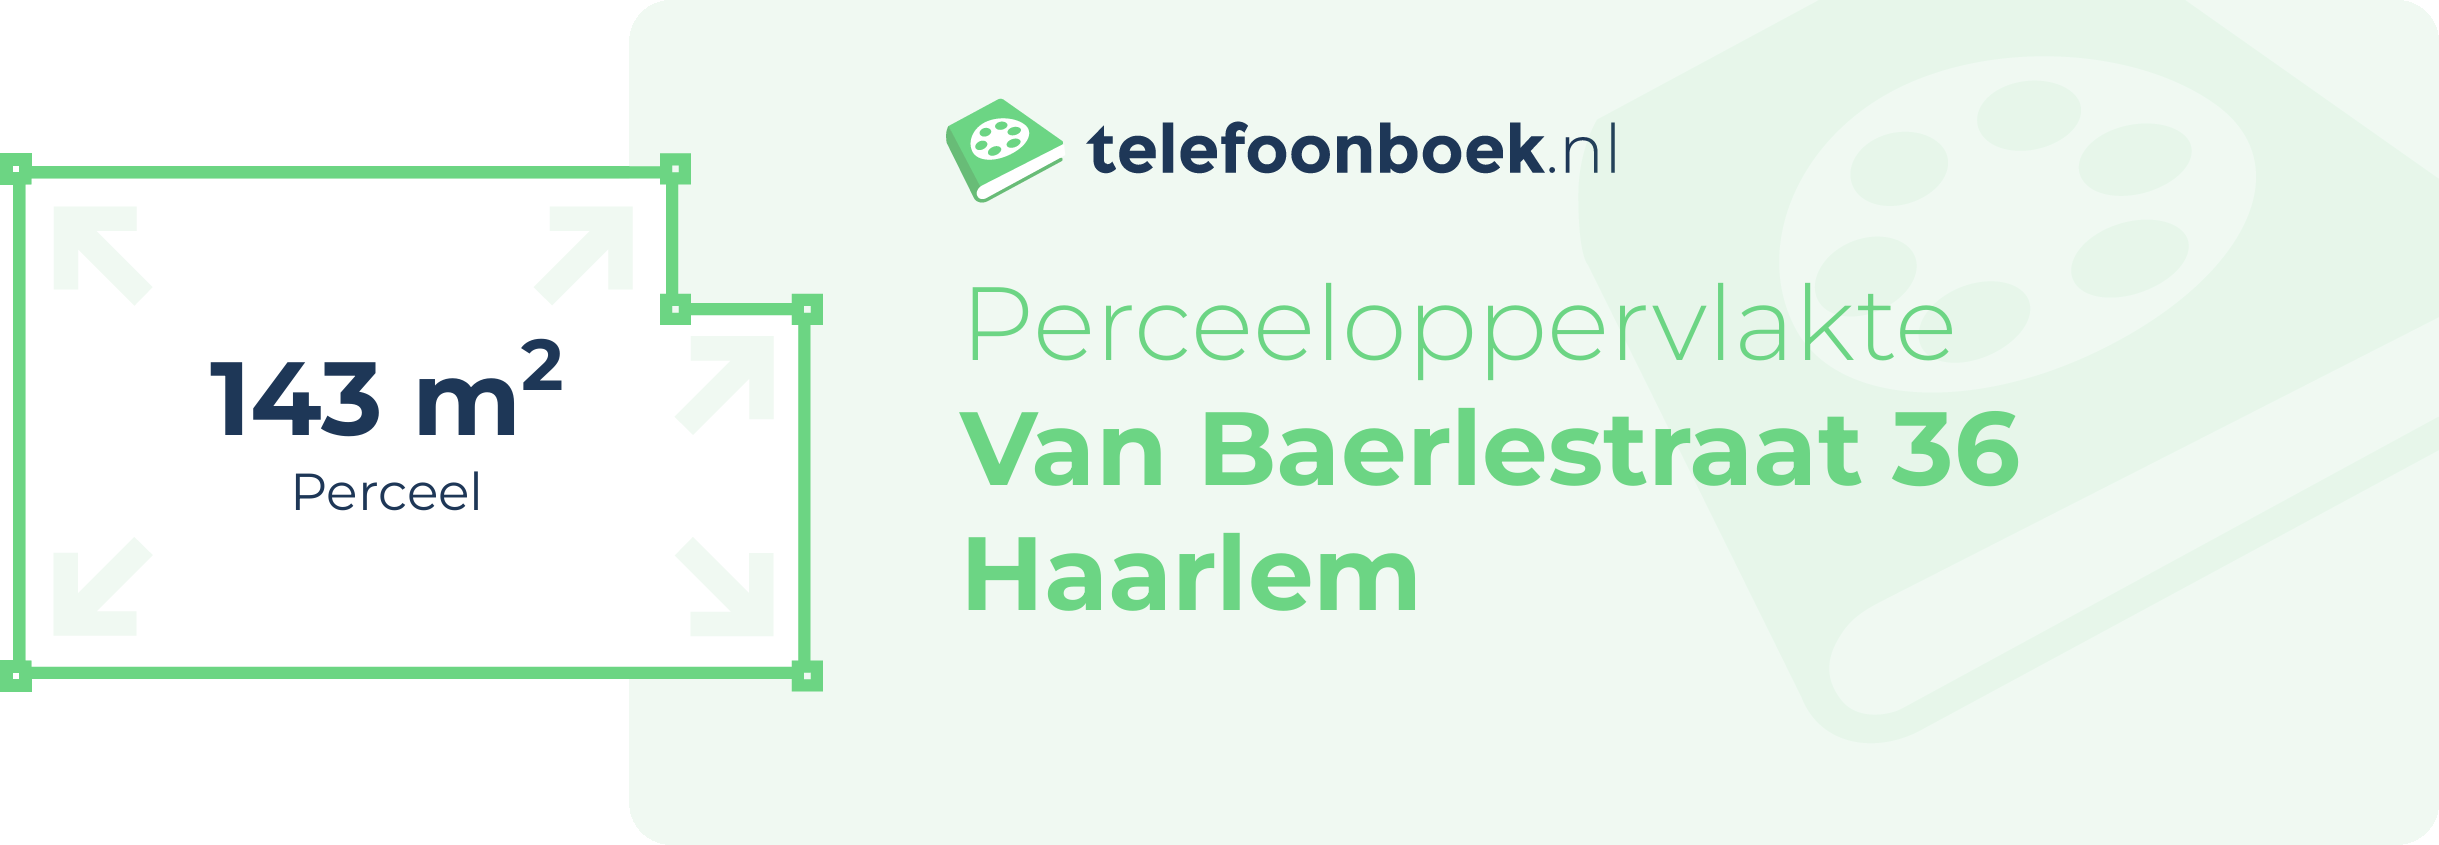 Perceeloppervlakte Van Baerlestraat 36 Haarlem